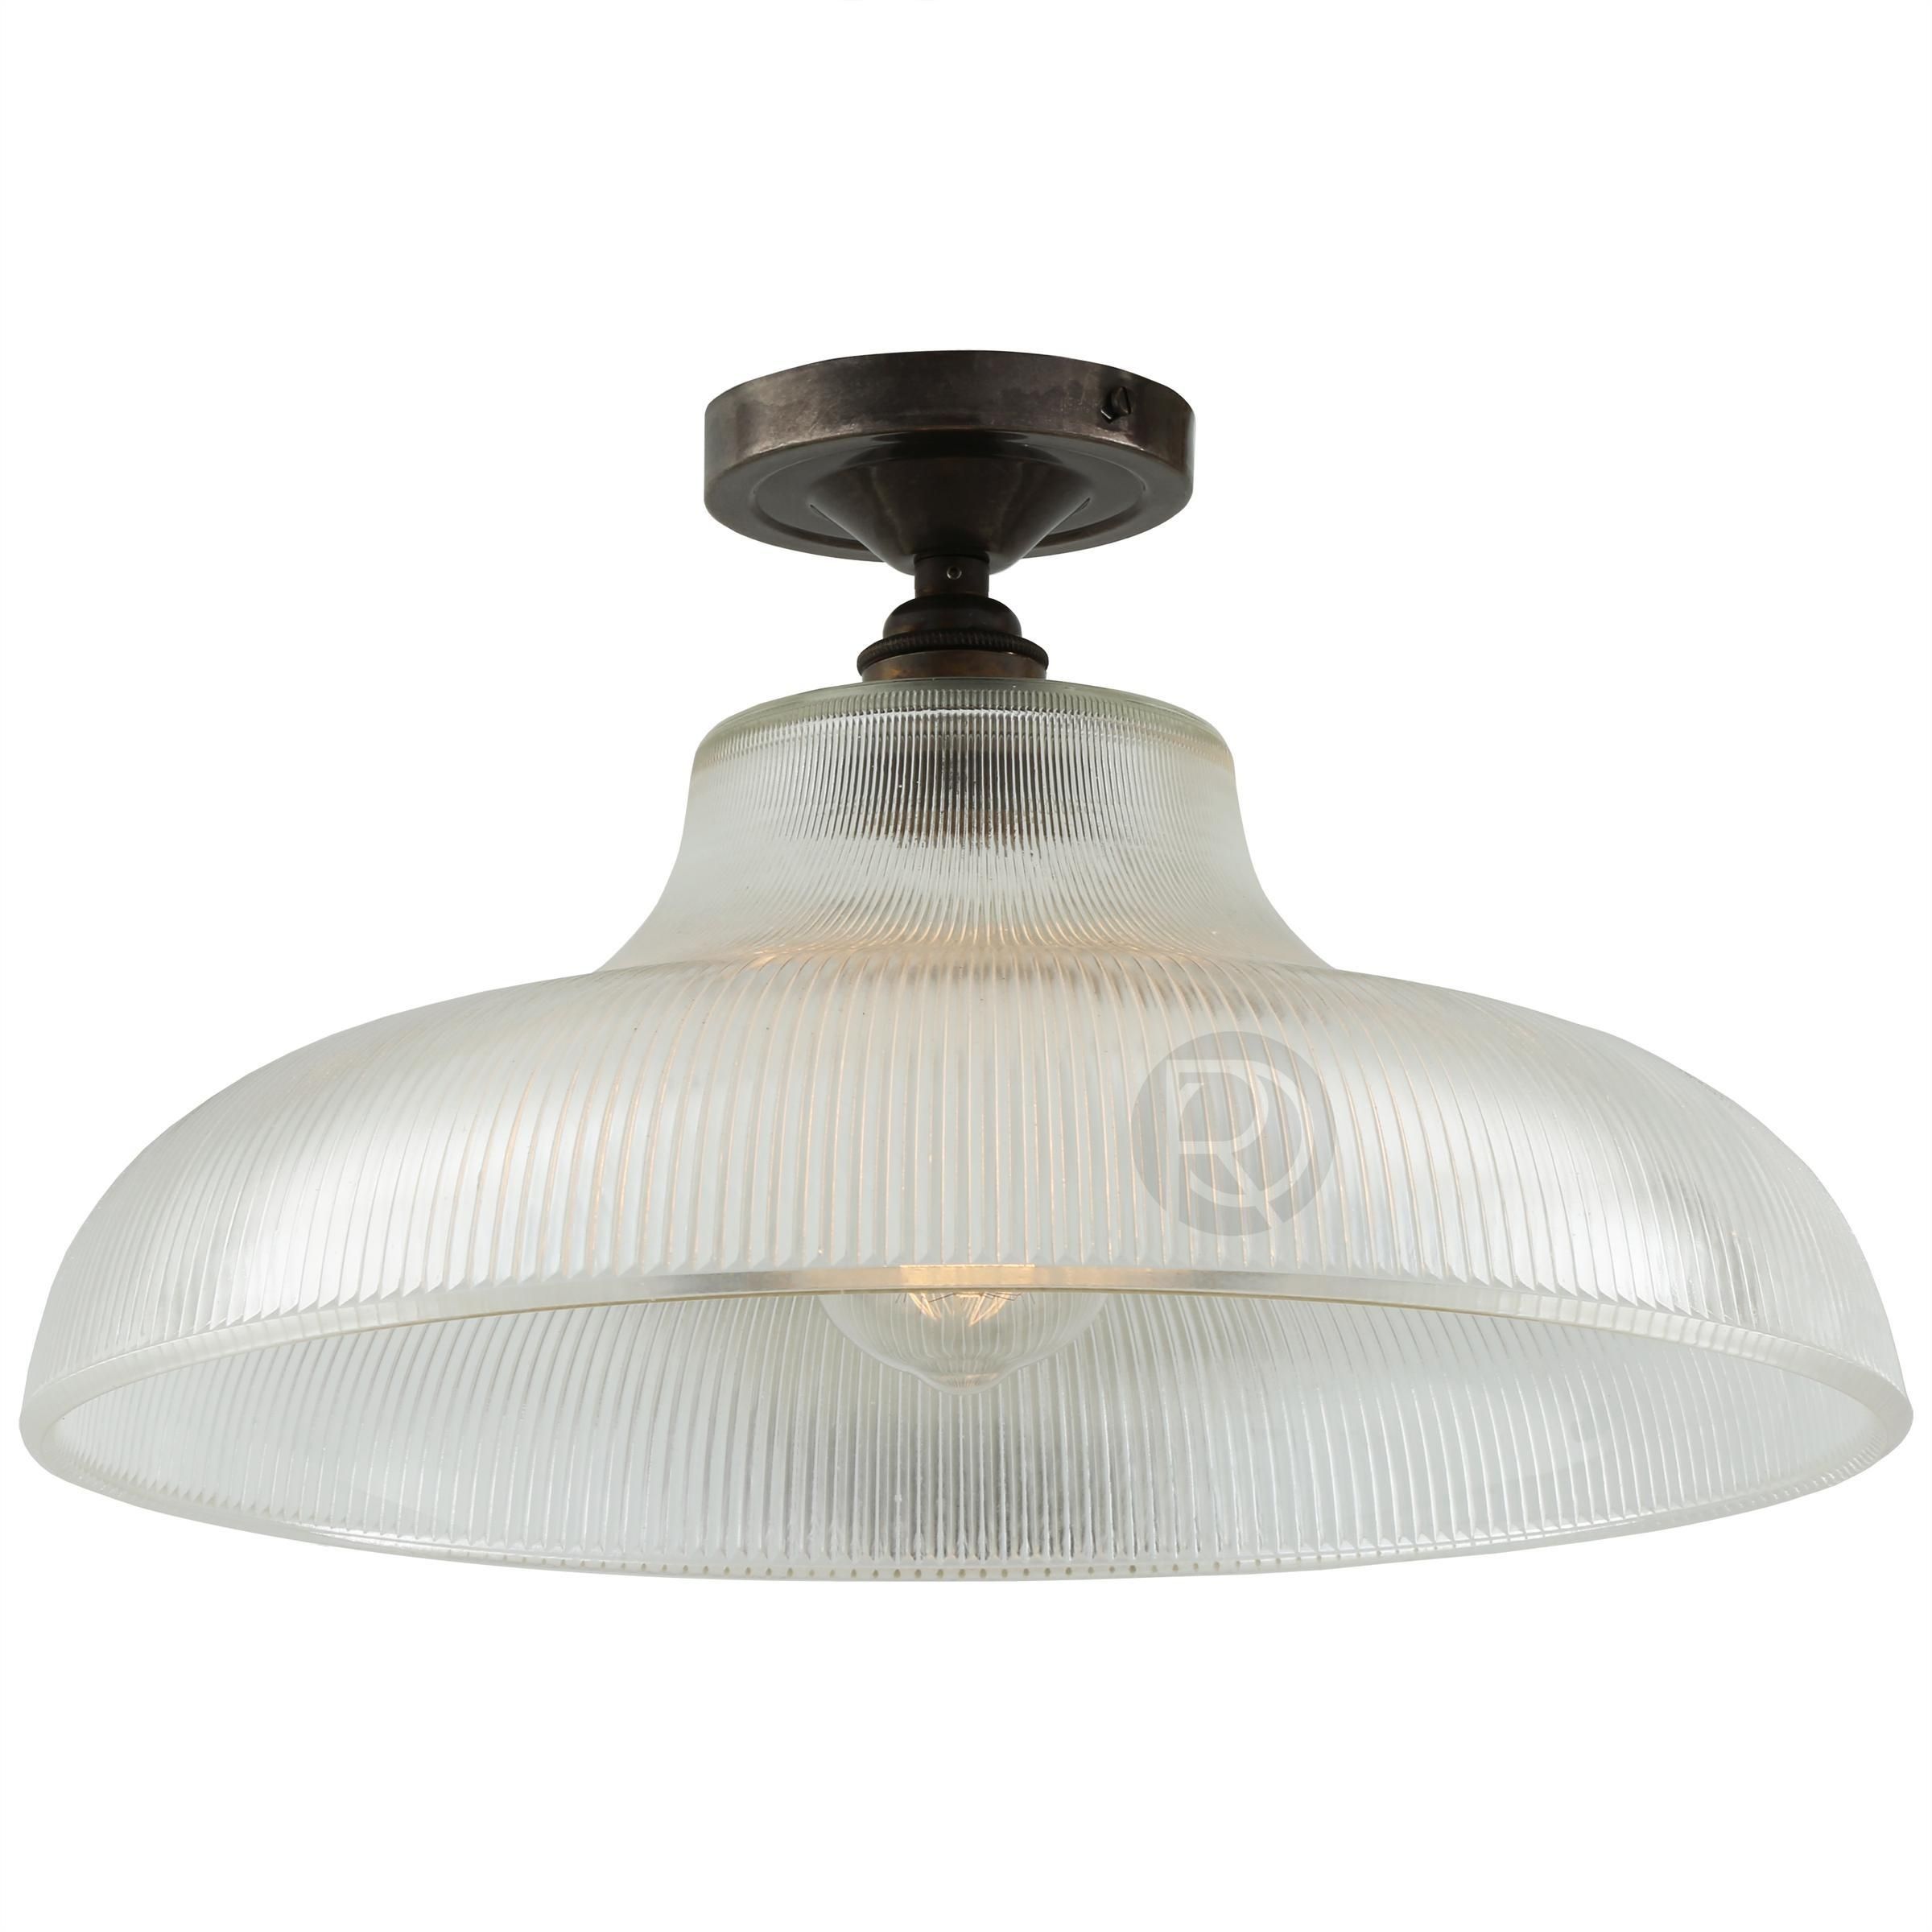 MONO by Mullan Lighting Ceiling Lamp